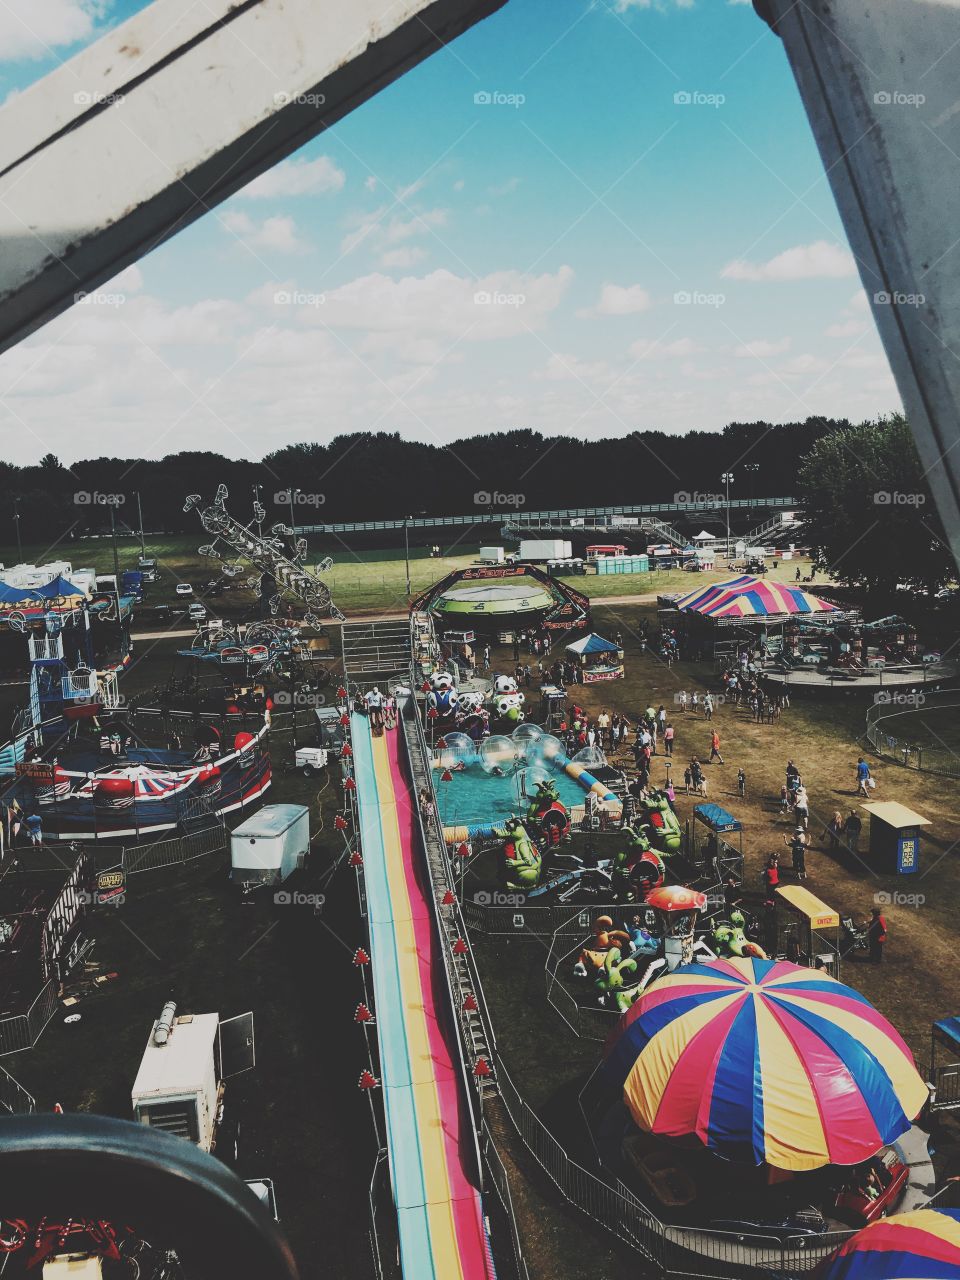 Summer at a fair
